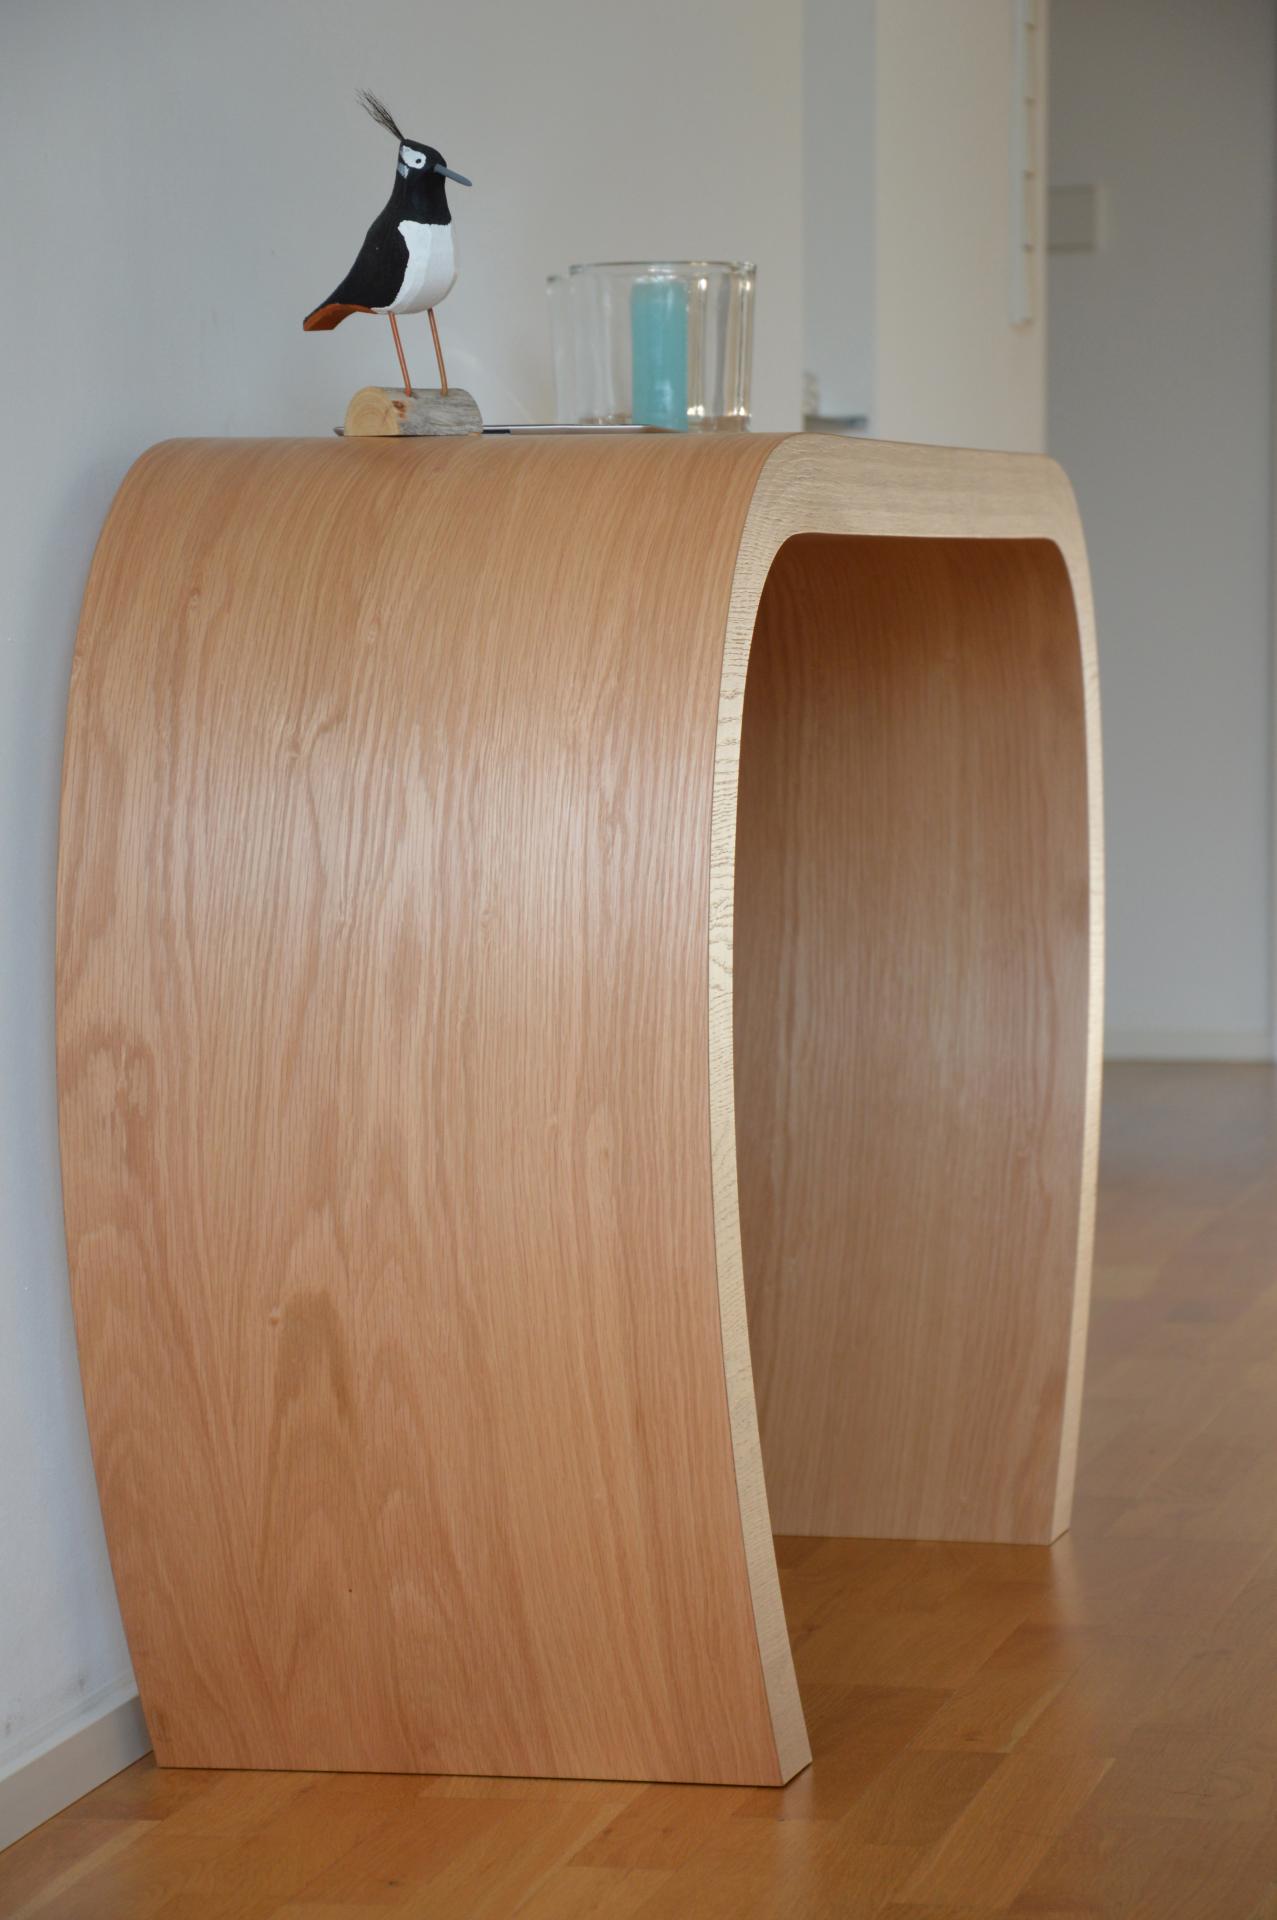 Das Sideboard Sidebow überzeugt mit seiner besonderen Form. Gefertigt wurde das Sideboard aus Echtholzfurnier. Die Farbe ist Asteiche. Es ist ein Produkt der Marke Jan Kurtz und hat eine Breite von 123 cm.